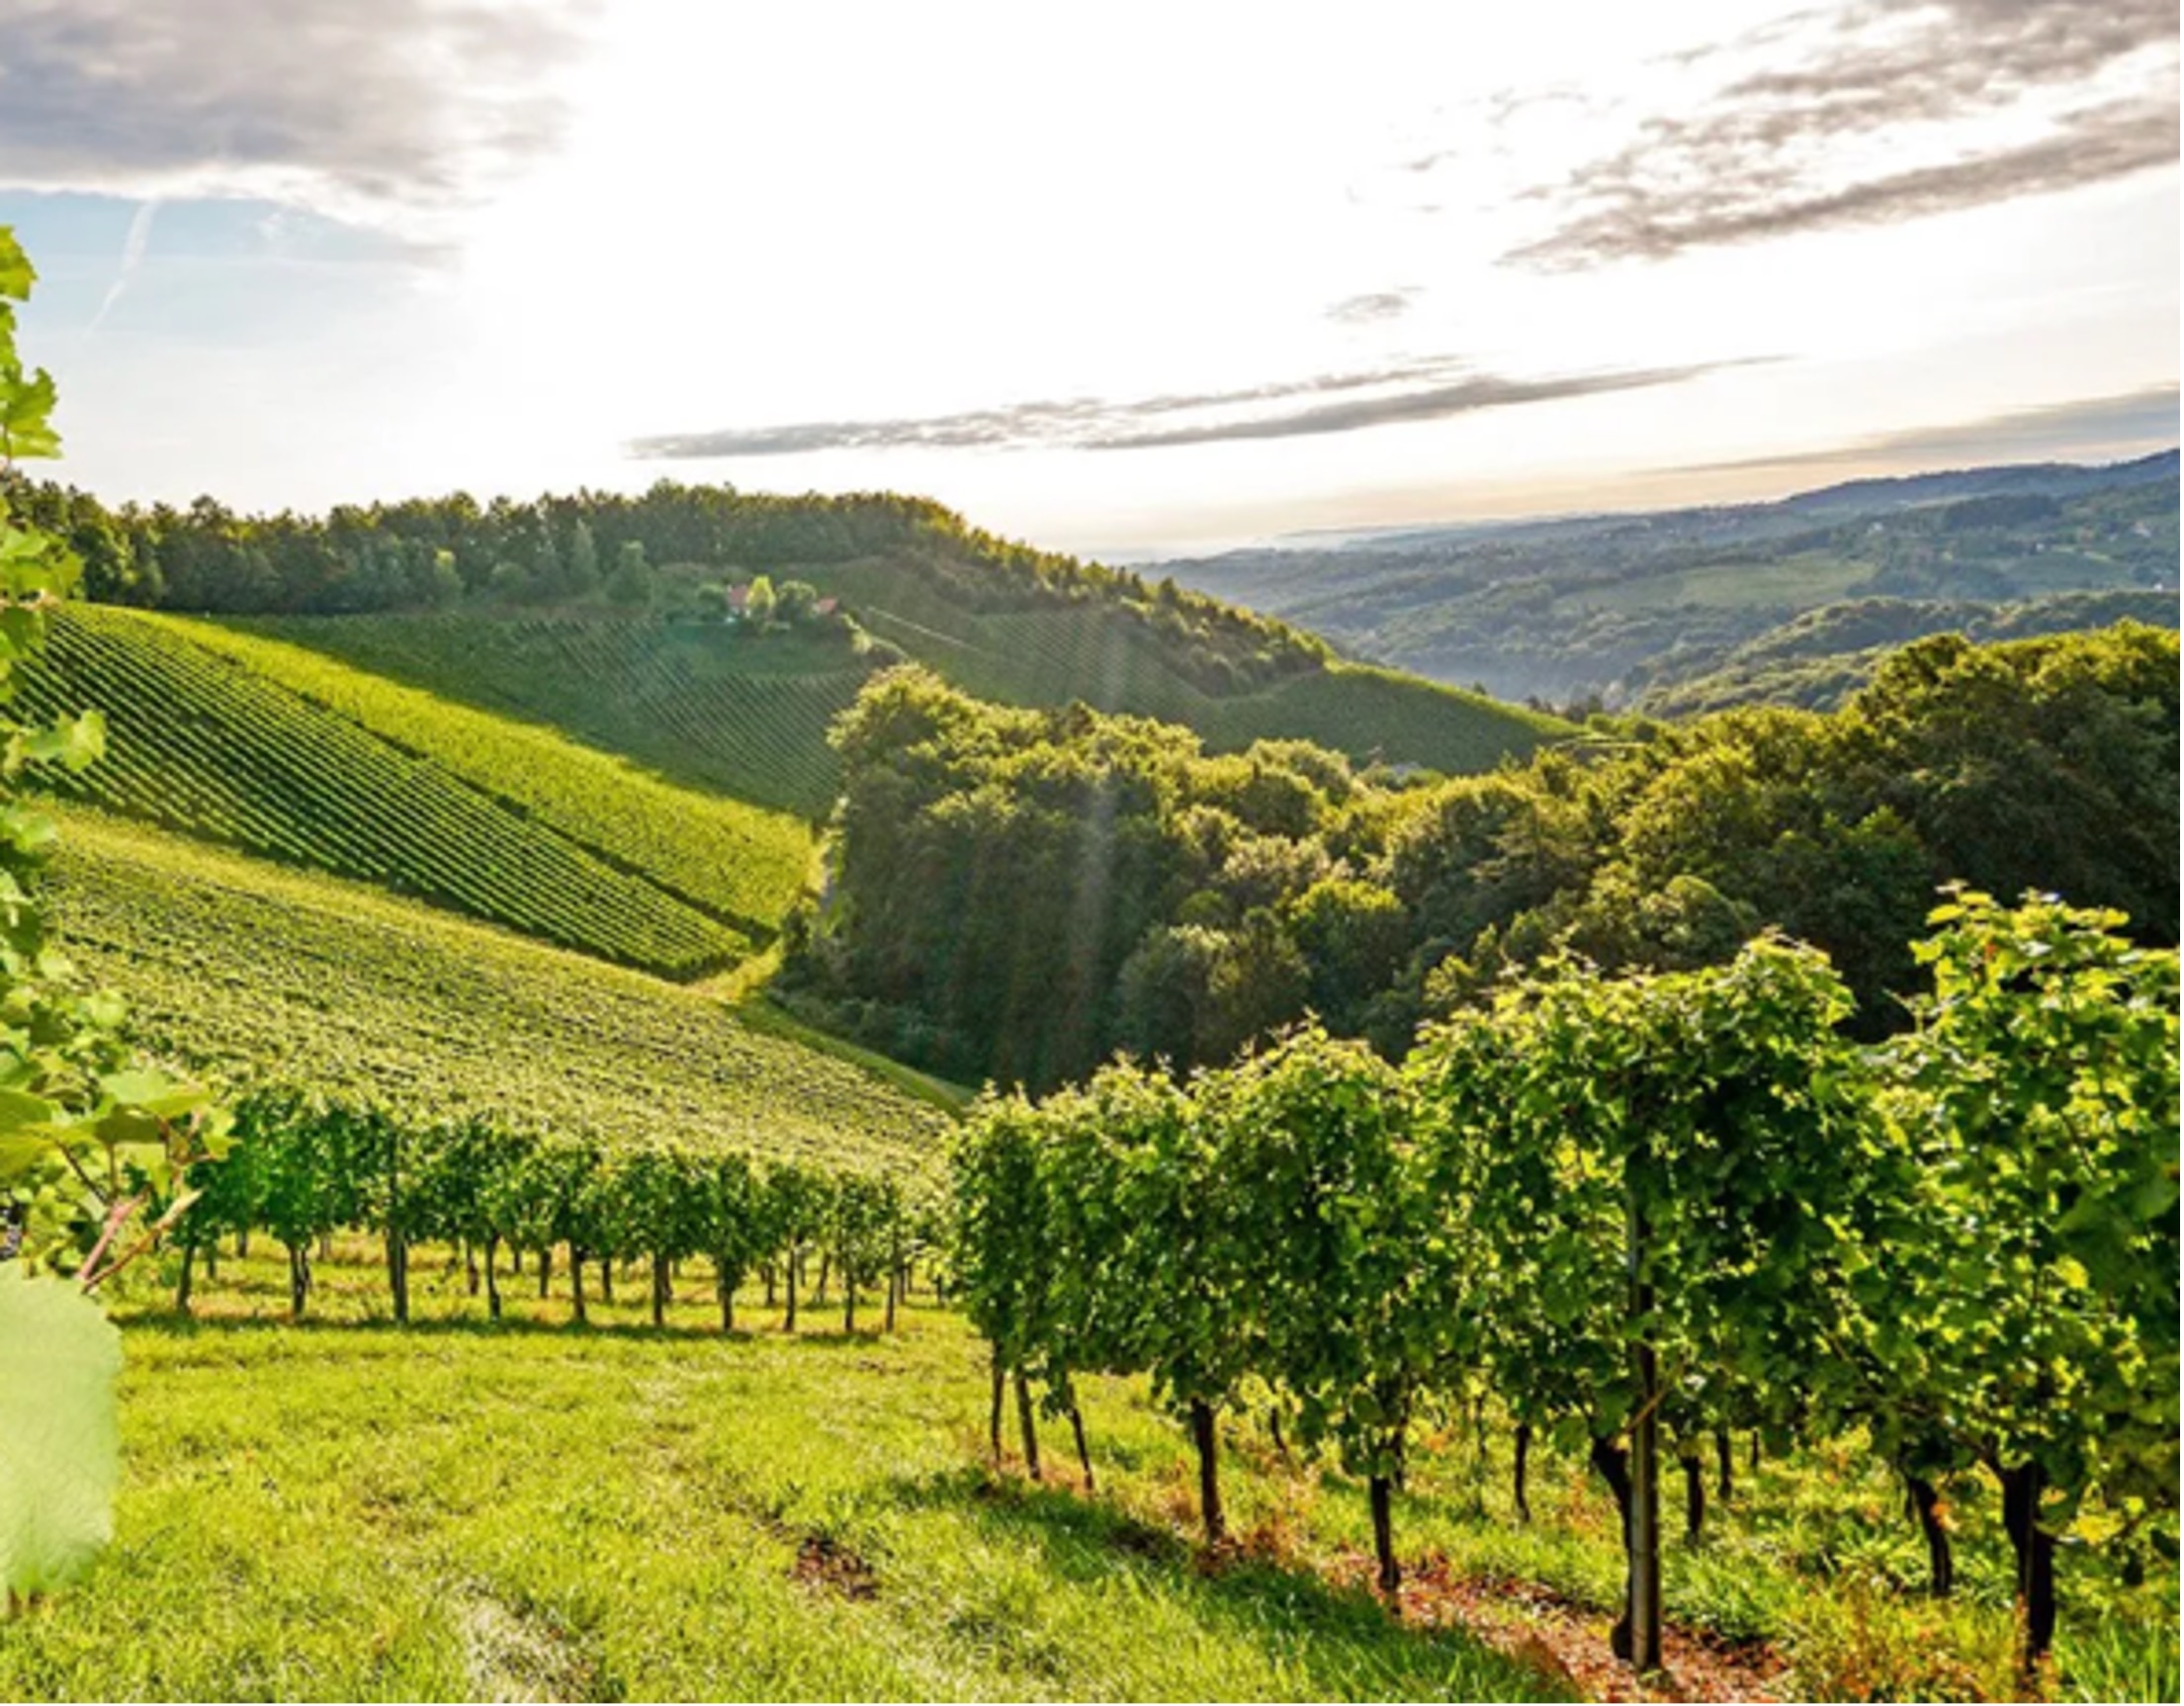 Vineyards in Colli Piacentini - Emilia Romagna